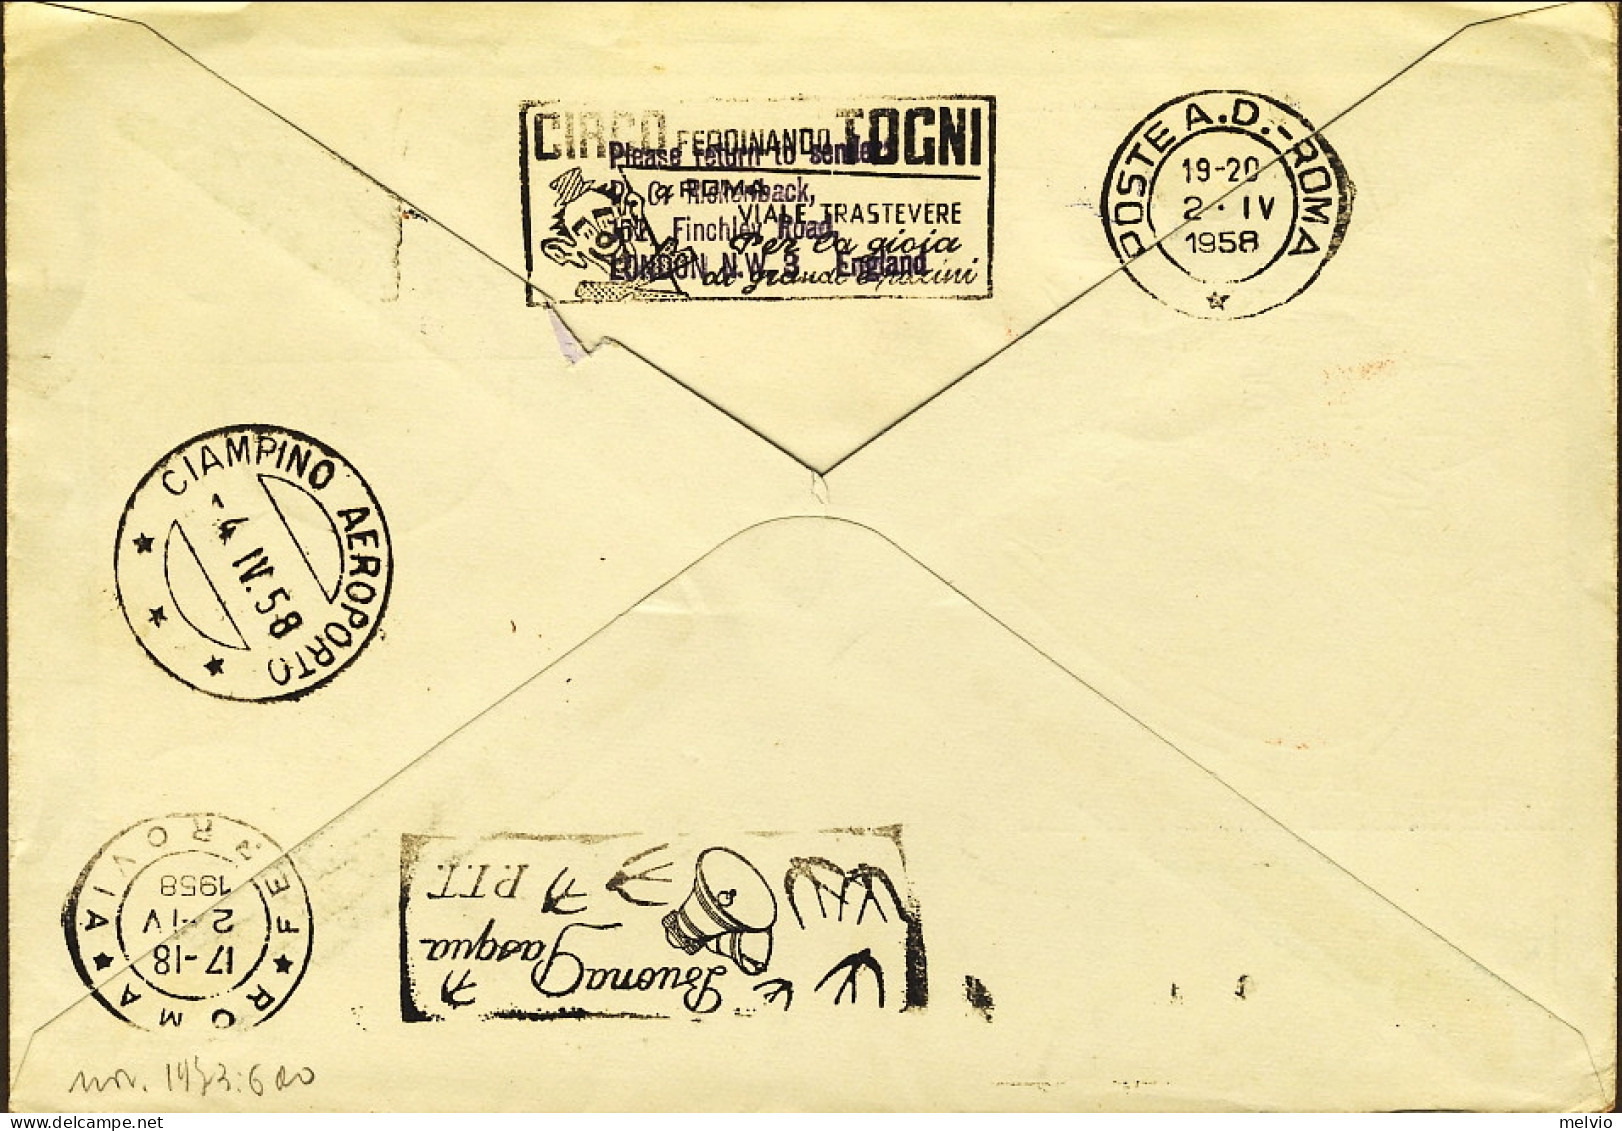 1958-Germania Occidentale I^volo Francoforte Roma Del 2 Aprile - Briefe U. Dokumente